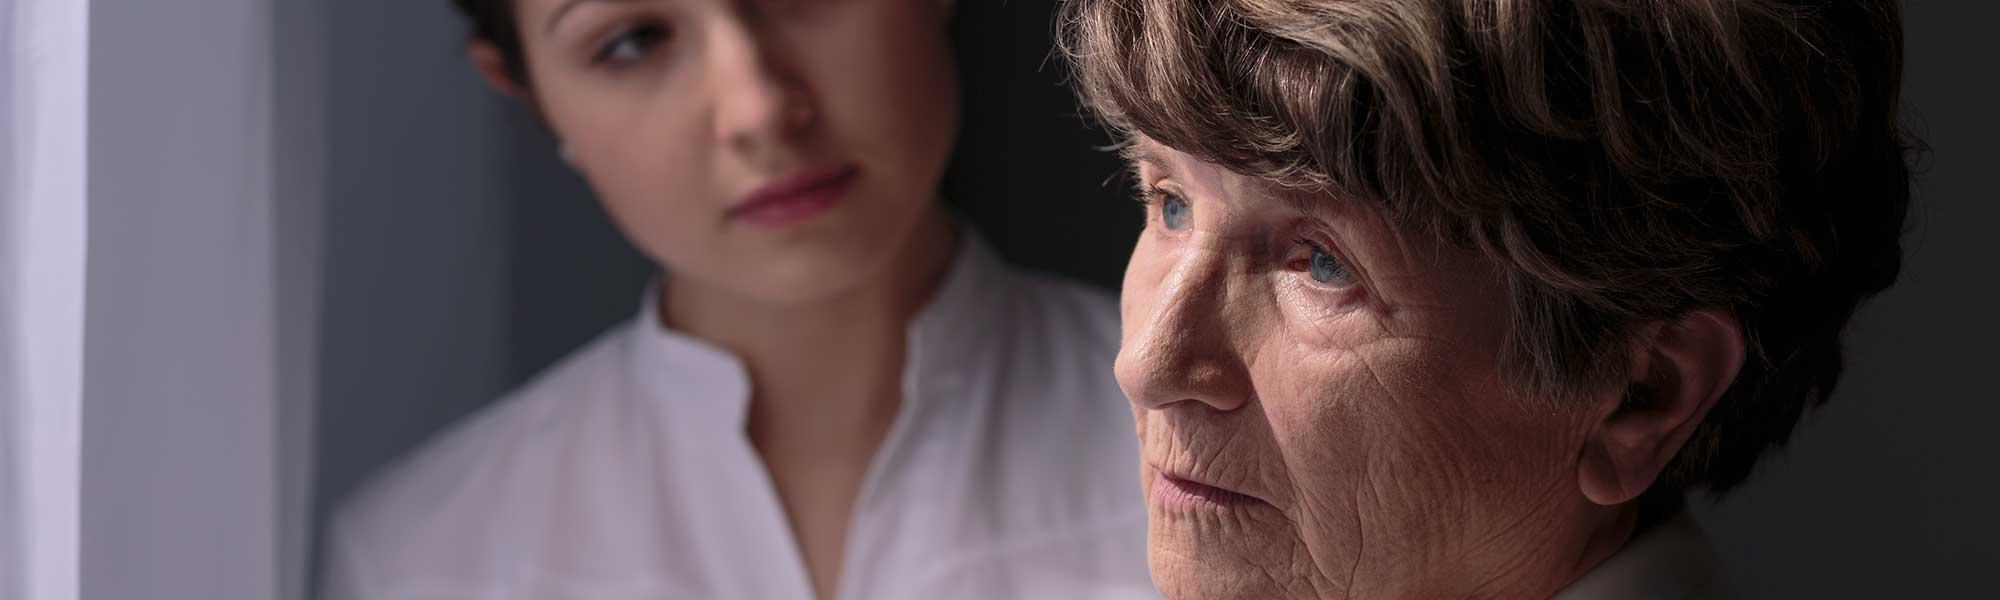 Maladie d'Alzheimer : quel rôle dans la perte d’autonomie ?